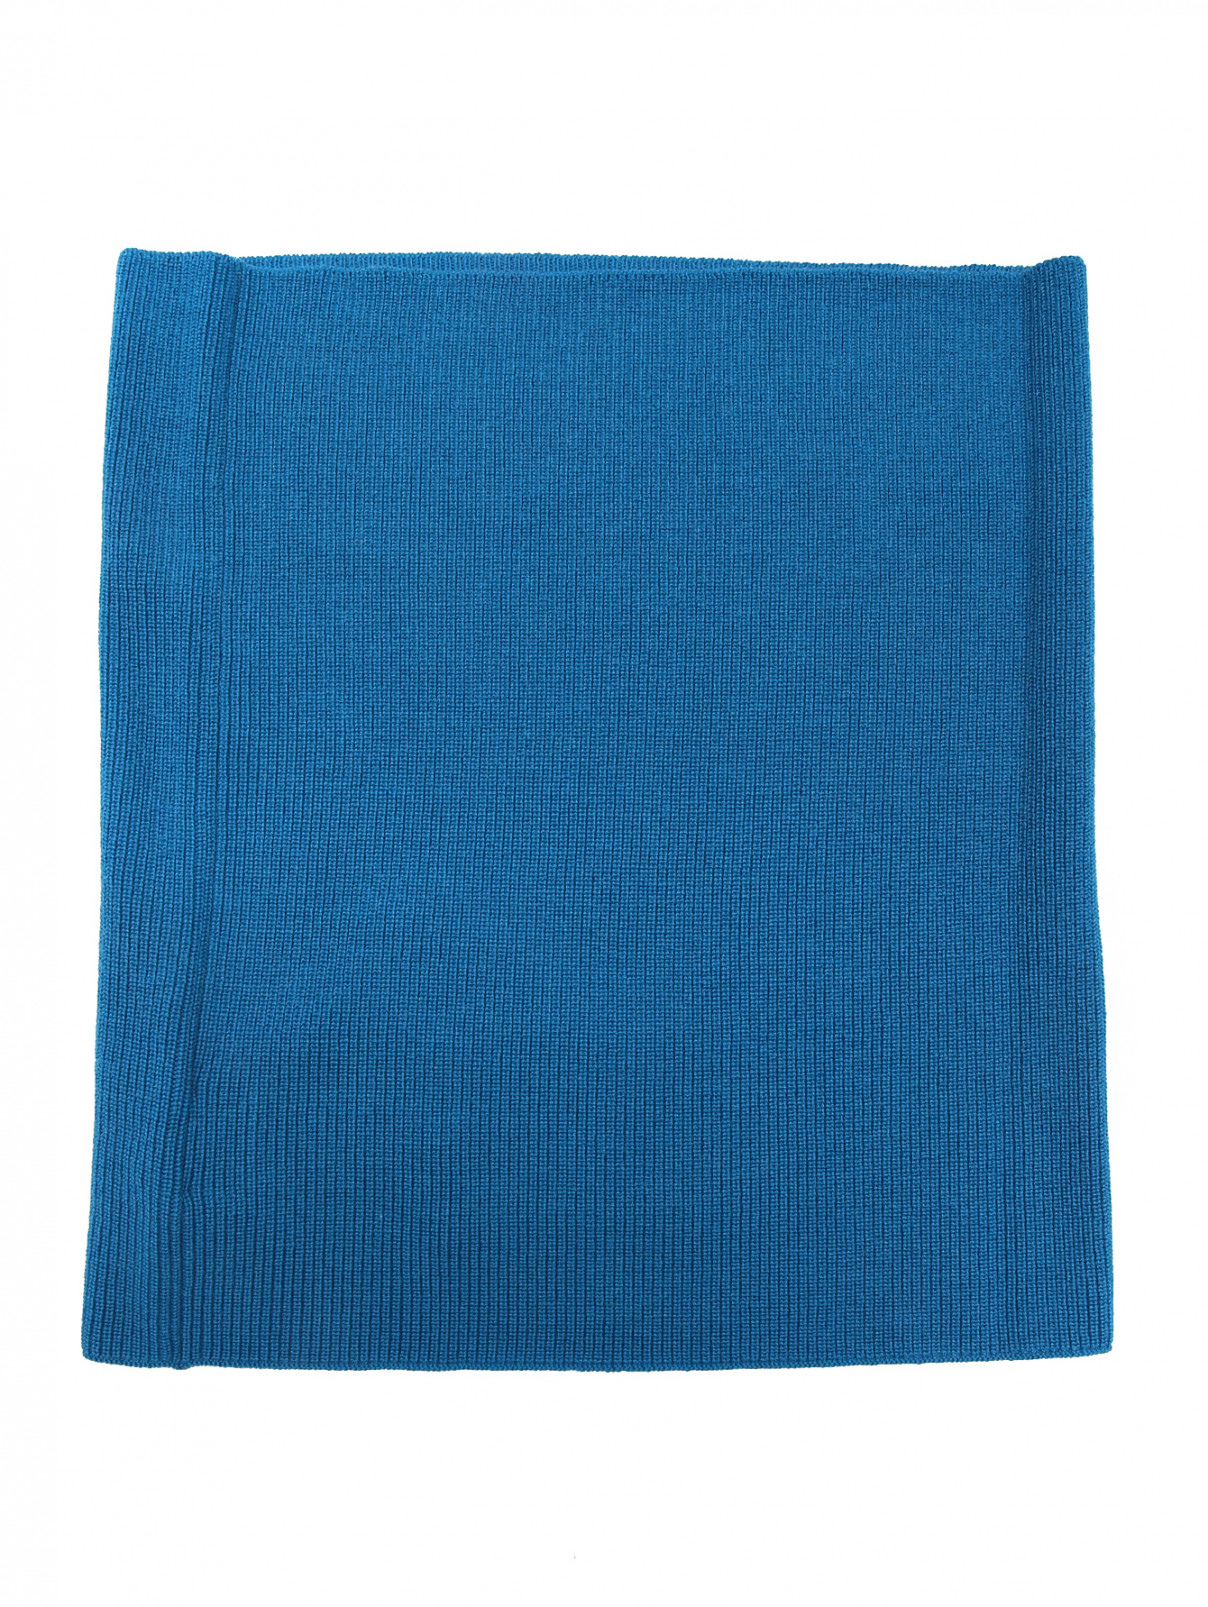 Трикотажный воротник - шарф из шерсти Marina Rinaldi  –  Общий вид  – Цвет:  Синий